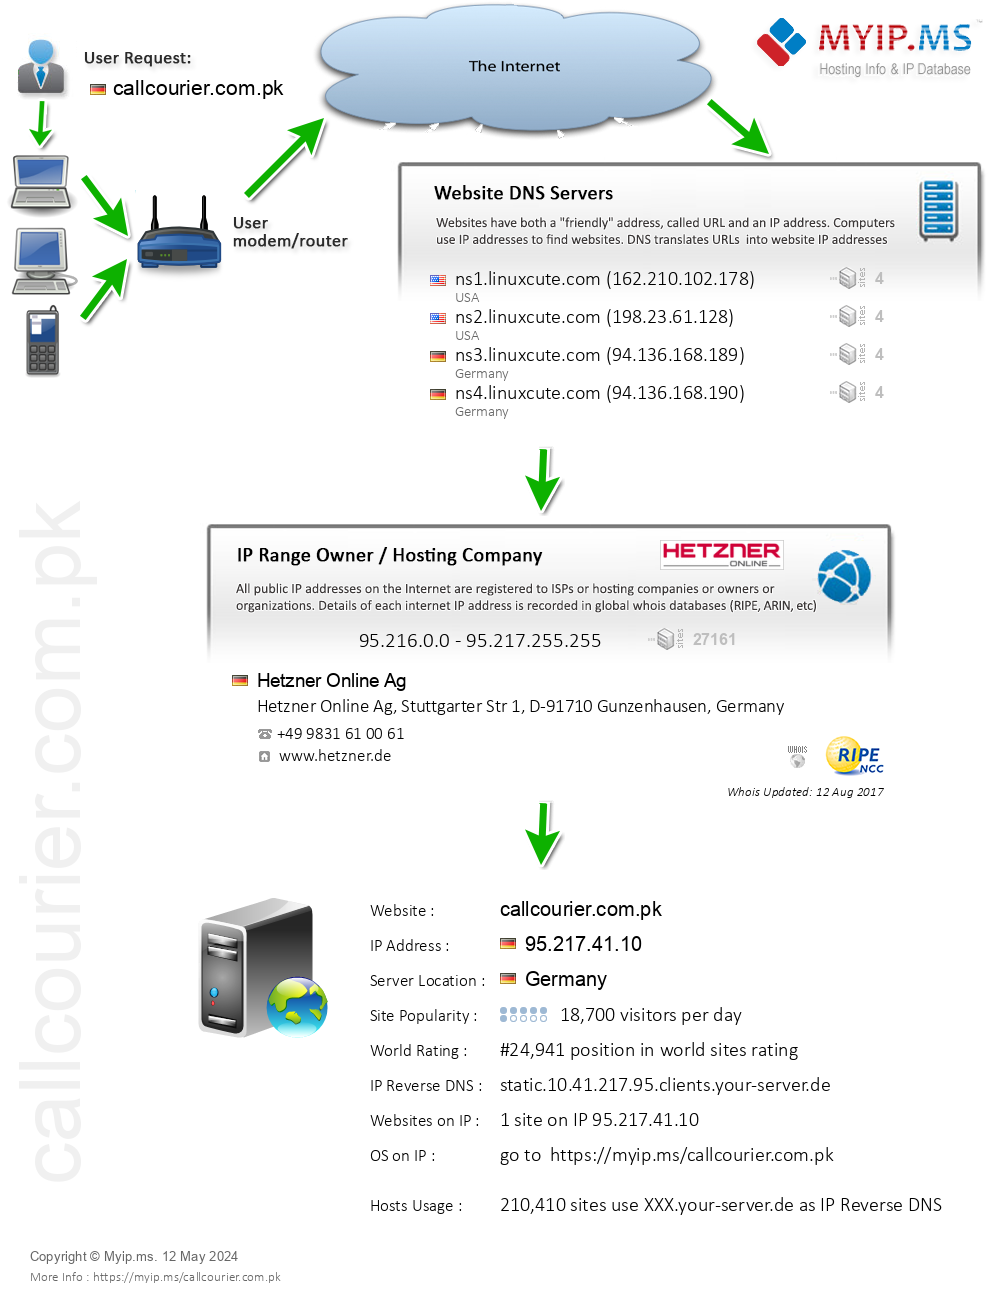 Callcourier.com.pk - Website Hosting Visual IP Diagram